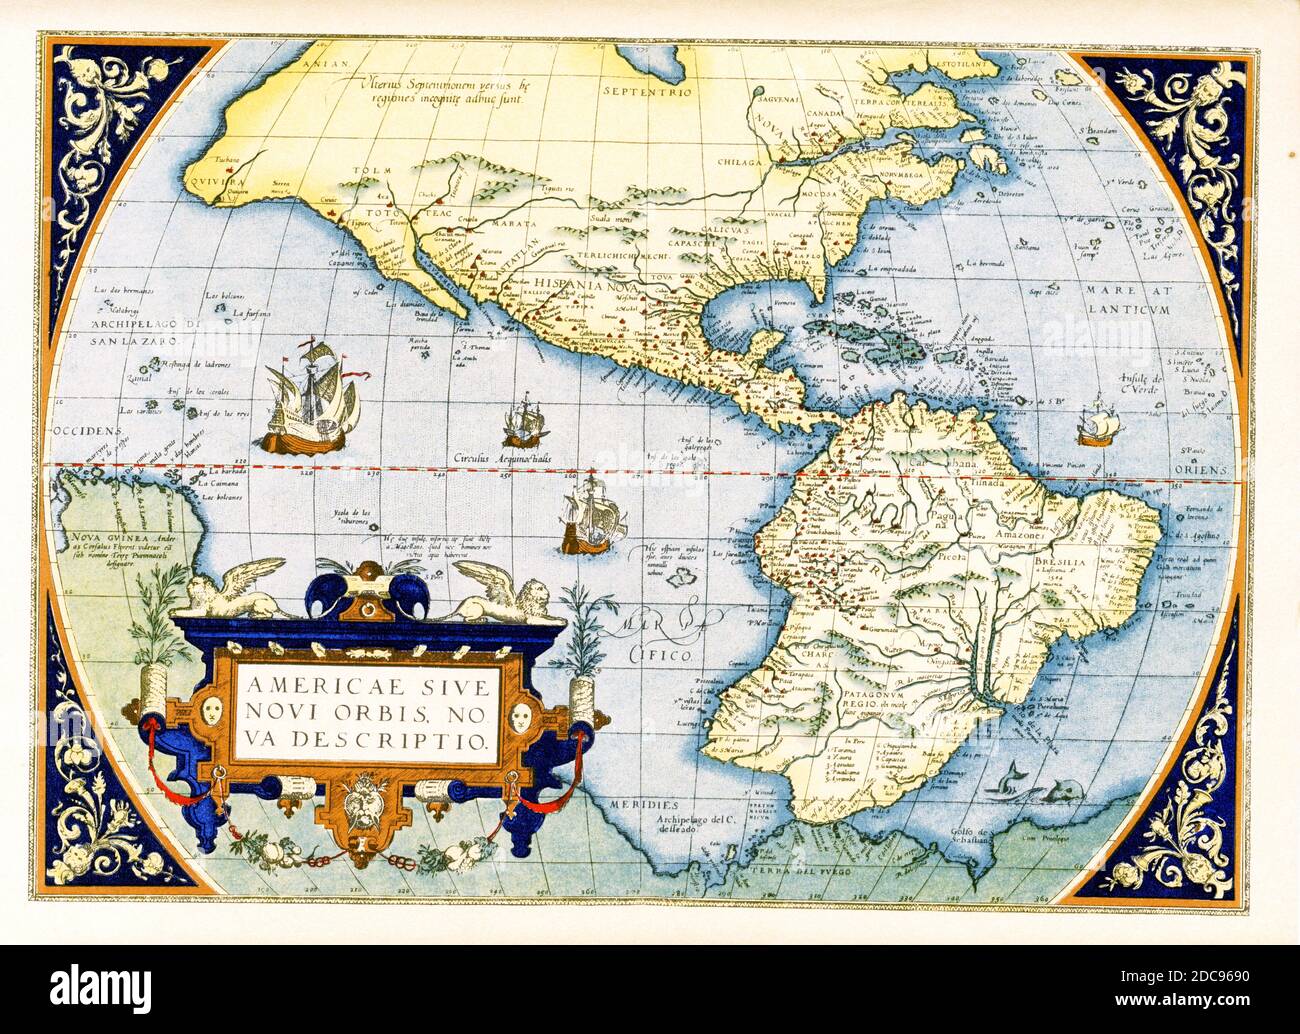 La mappa delle Americhe di Abraham Ortelius - Americae sive Novi Orbis, Nova Descriptio. Originariamente pubblicata nel 1570, la prima targa di questa mappa si basava sulla mappa del mondo a più fogli di Gerard Mercator dal 1569. Incisa da Frans Hogenberg, questa è diventata una delle più famose mappe influenti del nuovo mondo e la base per una grande quantità di futura cartografia delle Americhe. Abraham Ortelius (1527-1598) è stato un cartografo, geografo e cosmografo olandese, convenzionalmente riconosciuto come creatore del primo atlante moderno, il Theatrum Orbis Terrarum. Foto Stock